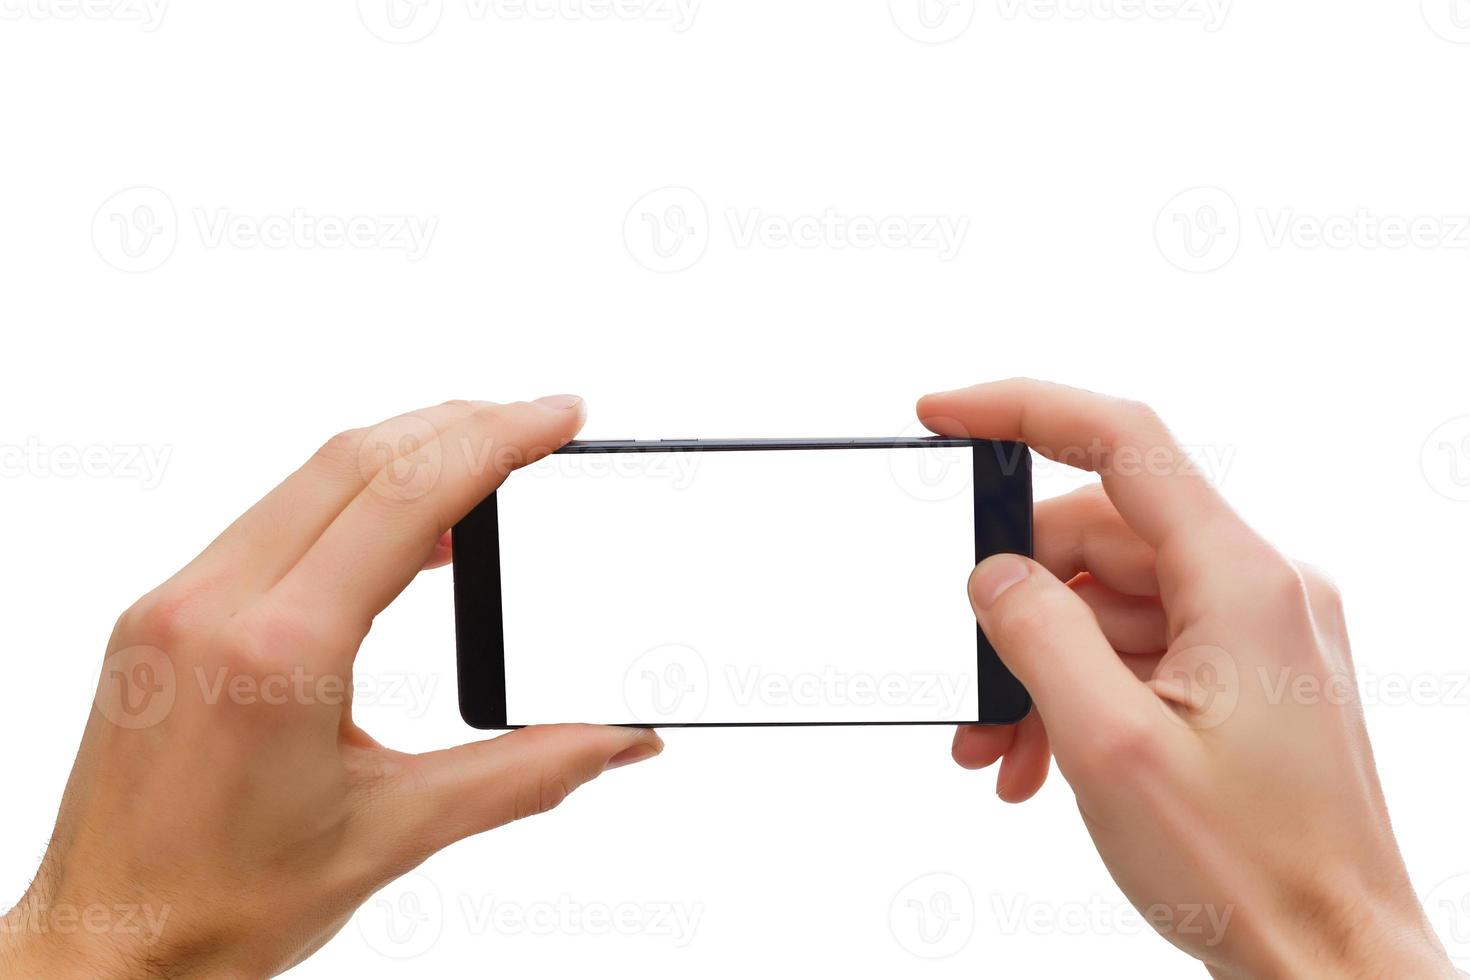 telefone na mão humana segurando o telefone inteligente móvel em branco isolado no fundo branco com traçado de recorte para a tela foto